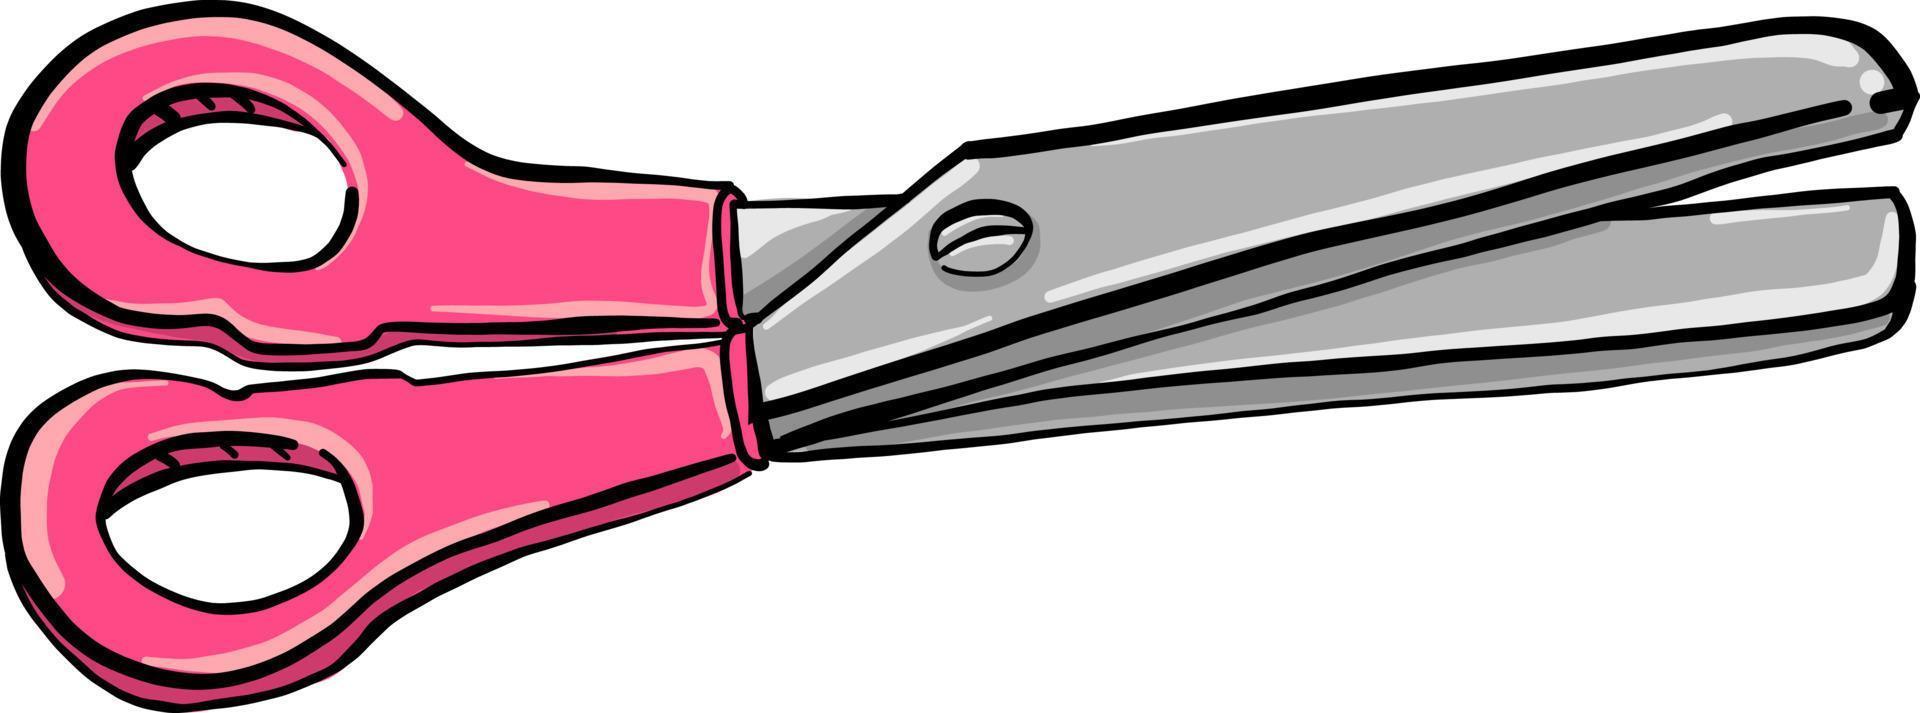 Tijeras de color rosa, ilustración, vector sobre fondo blanco.